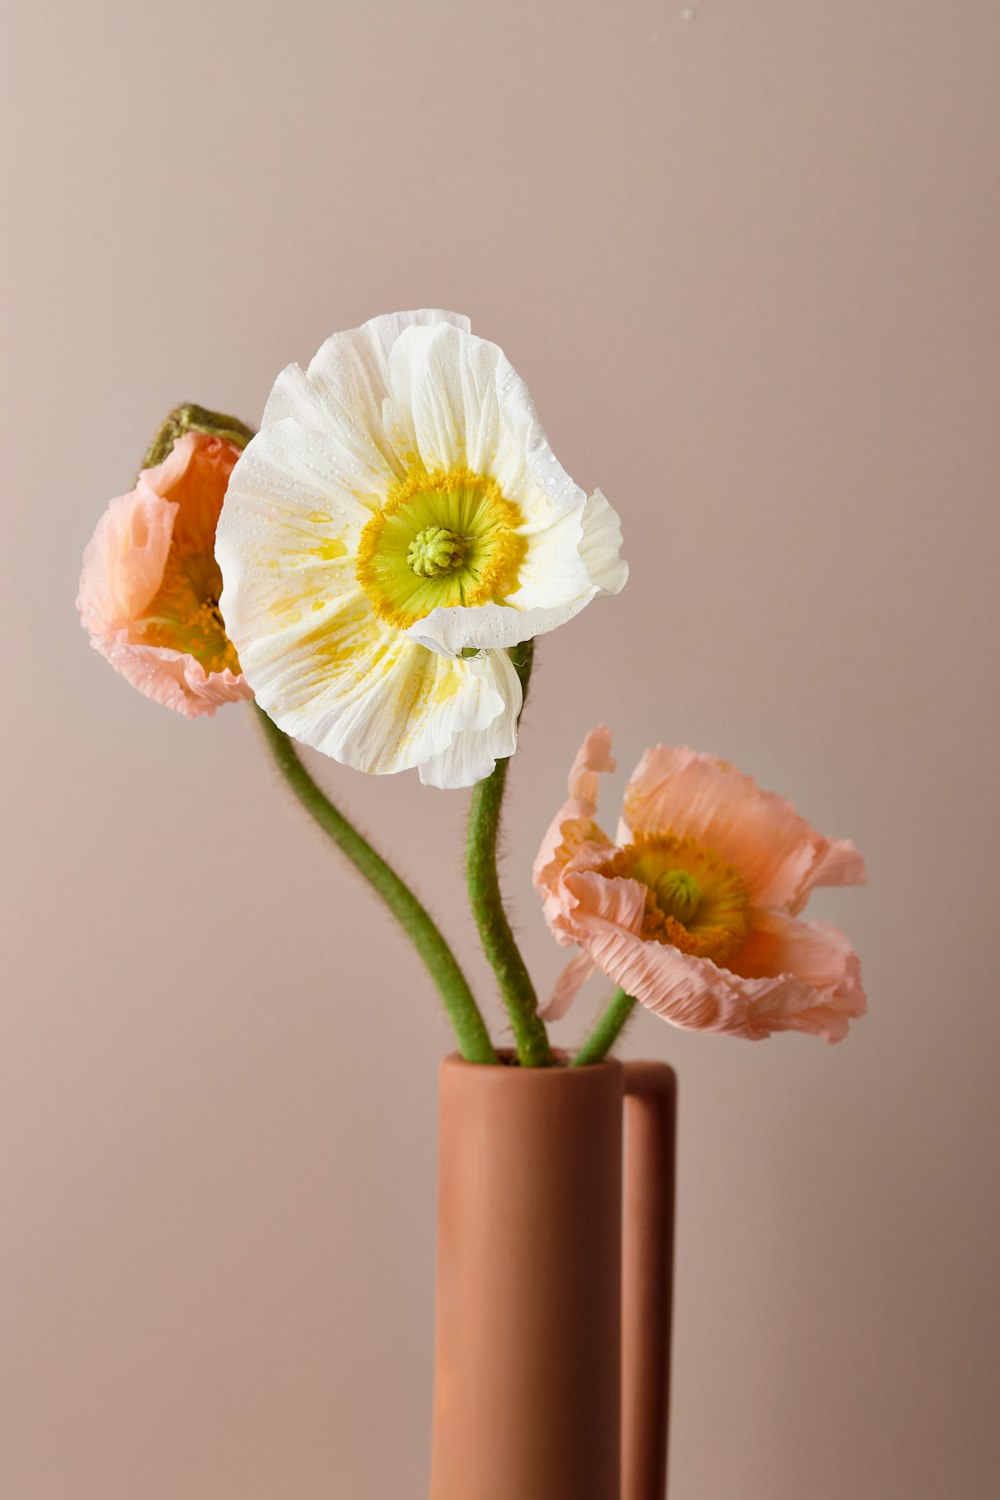 テーブルの上の花瓶に生けられた3つの花